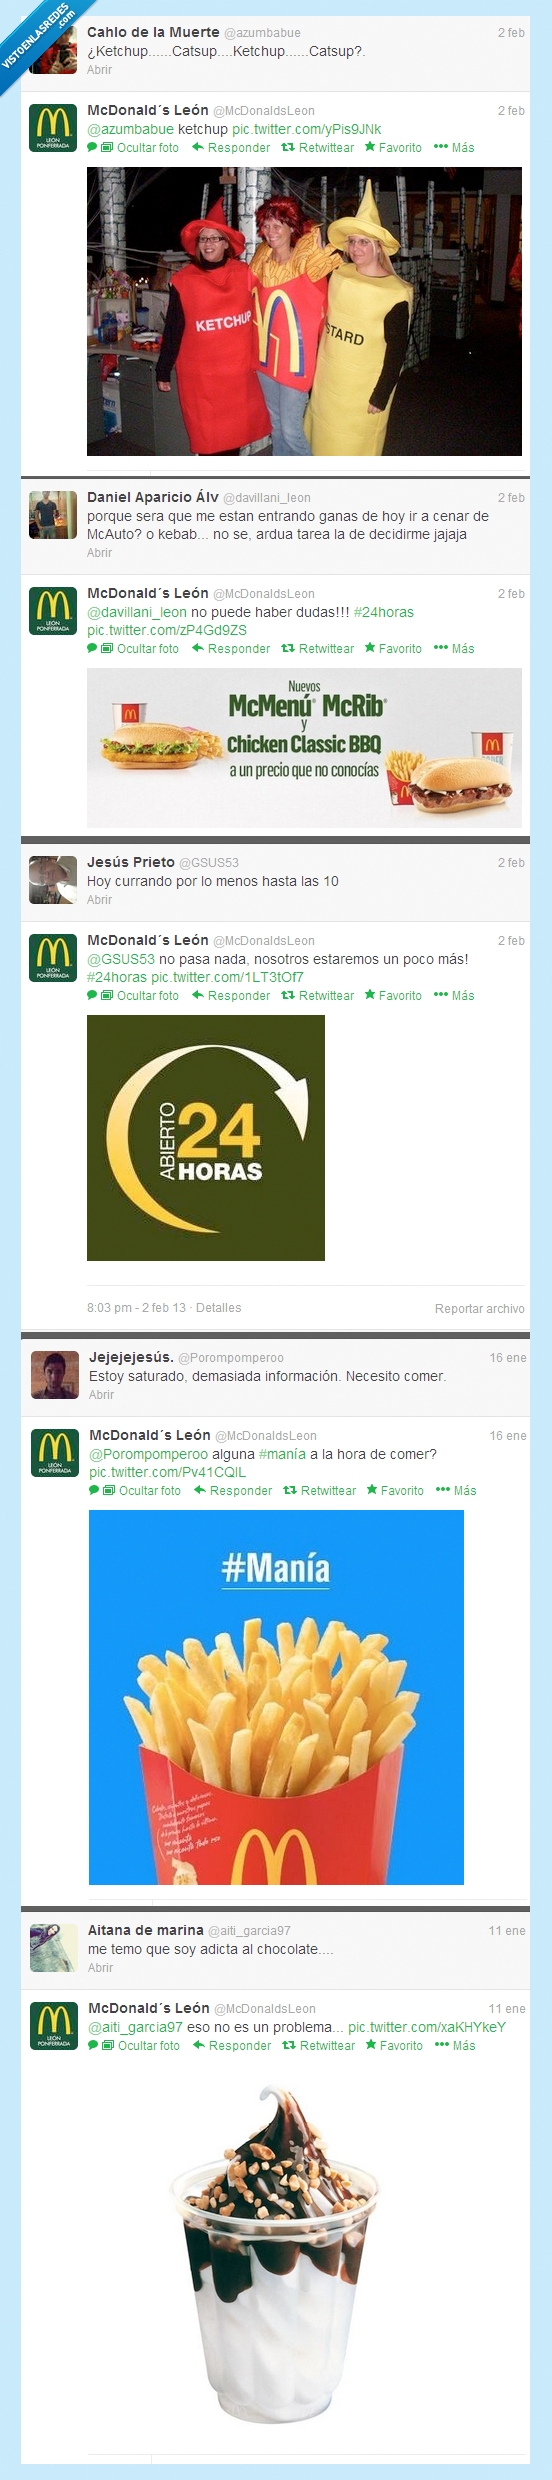 334962 - La publicidad de @McDonaldsleon llega a Twitter